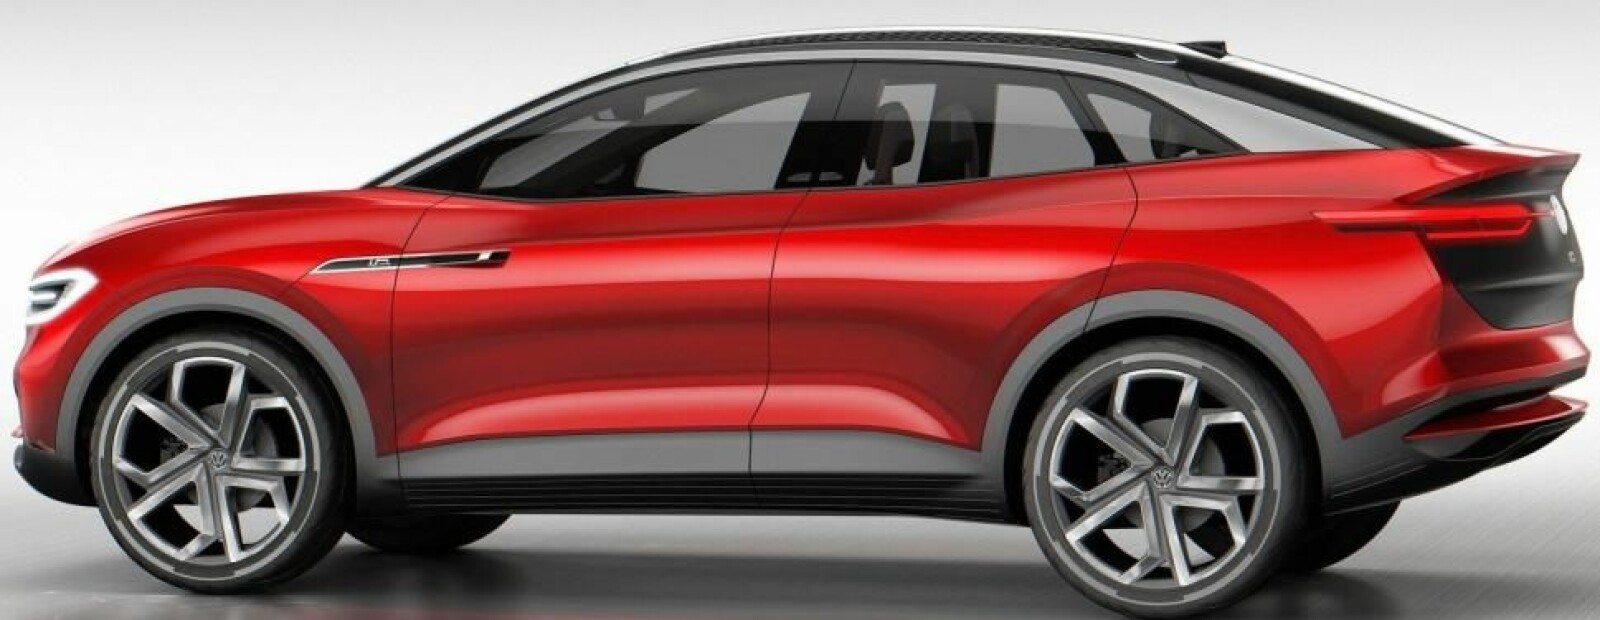 <b>LUKSUS EL-SUV:</b> VIZZION er først ut av de elektriske SUV-ene fra Volkswagen, så får den følge av ID Lounge.